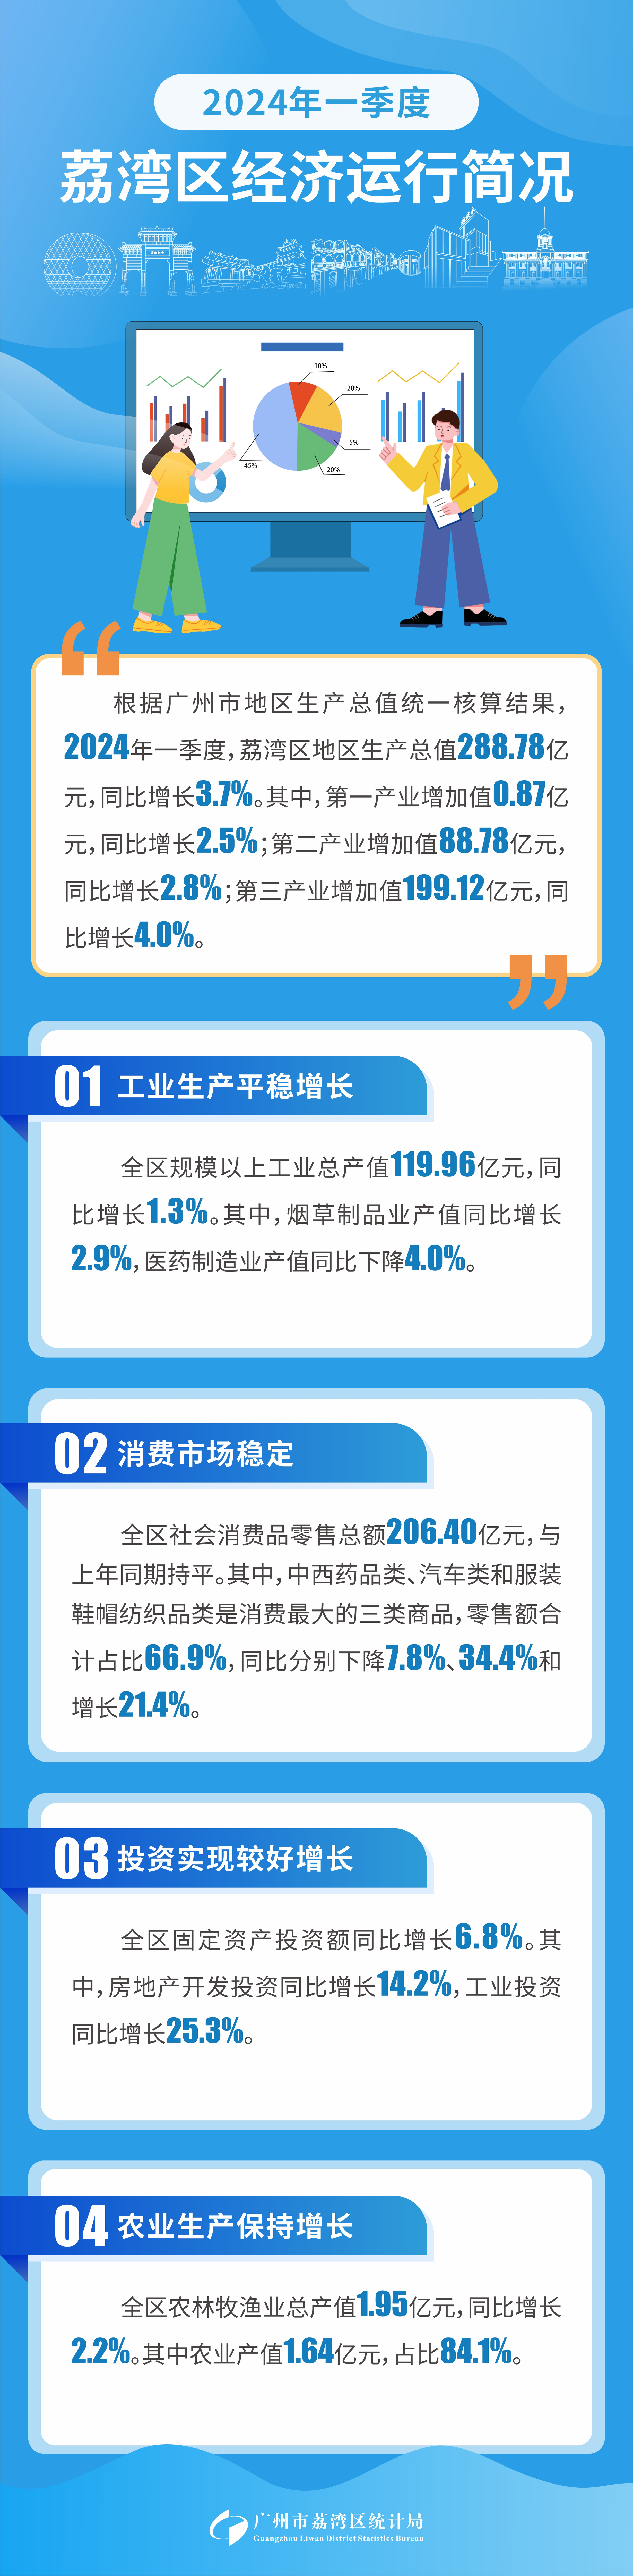 经济简况(1)2024年一季度荔湾区经济运行简况.jpg